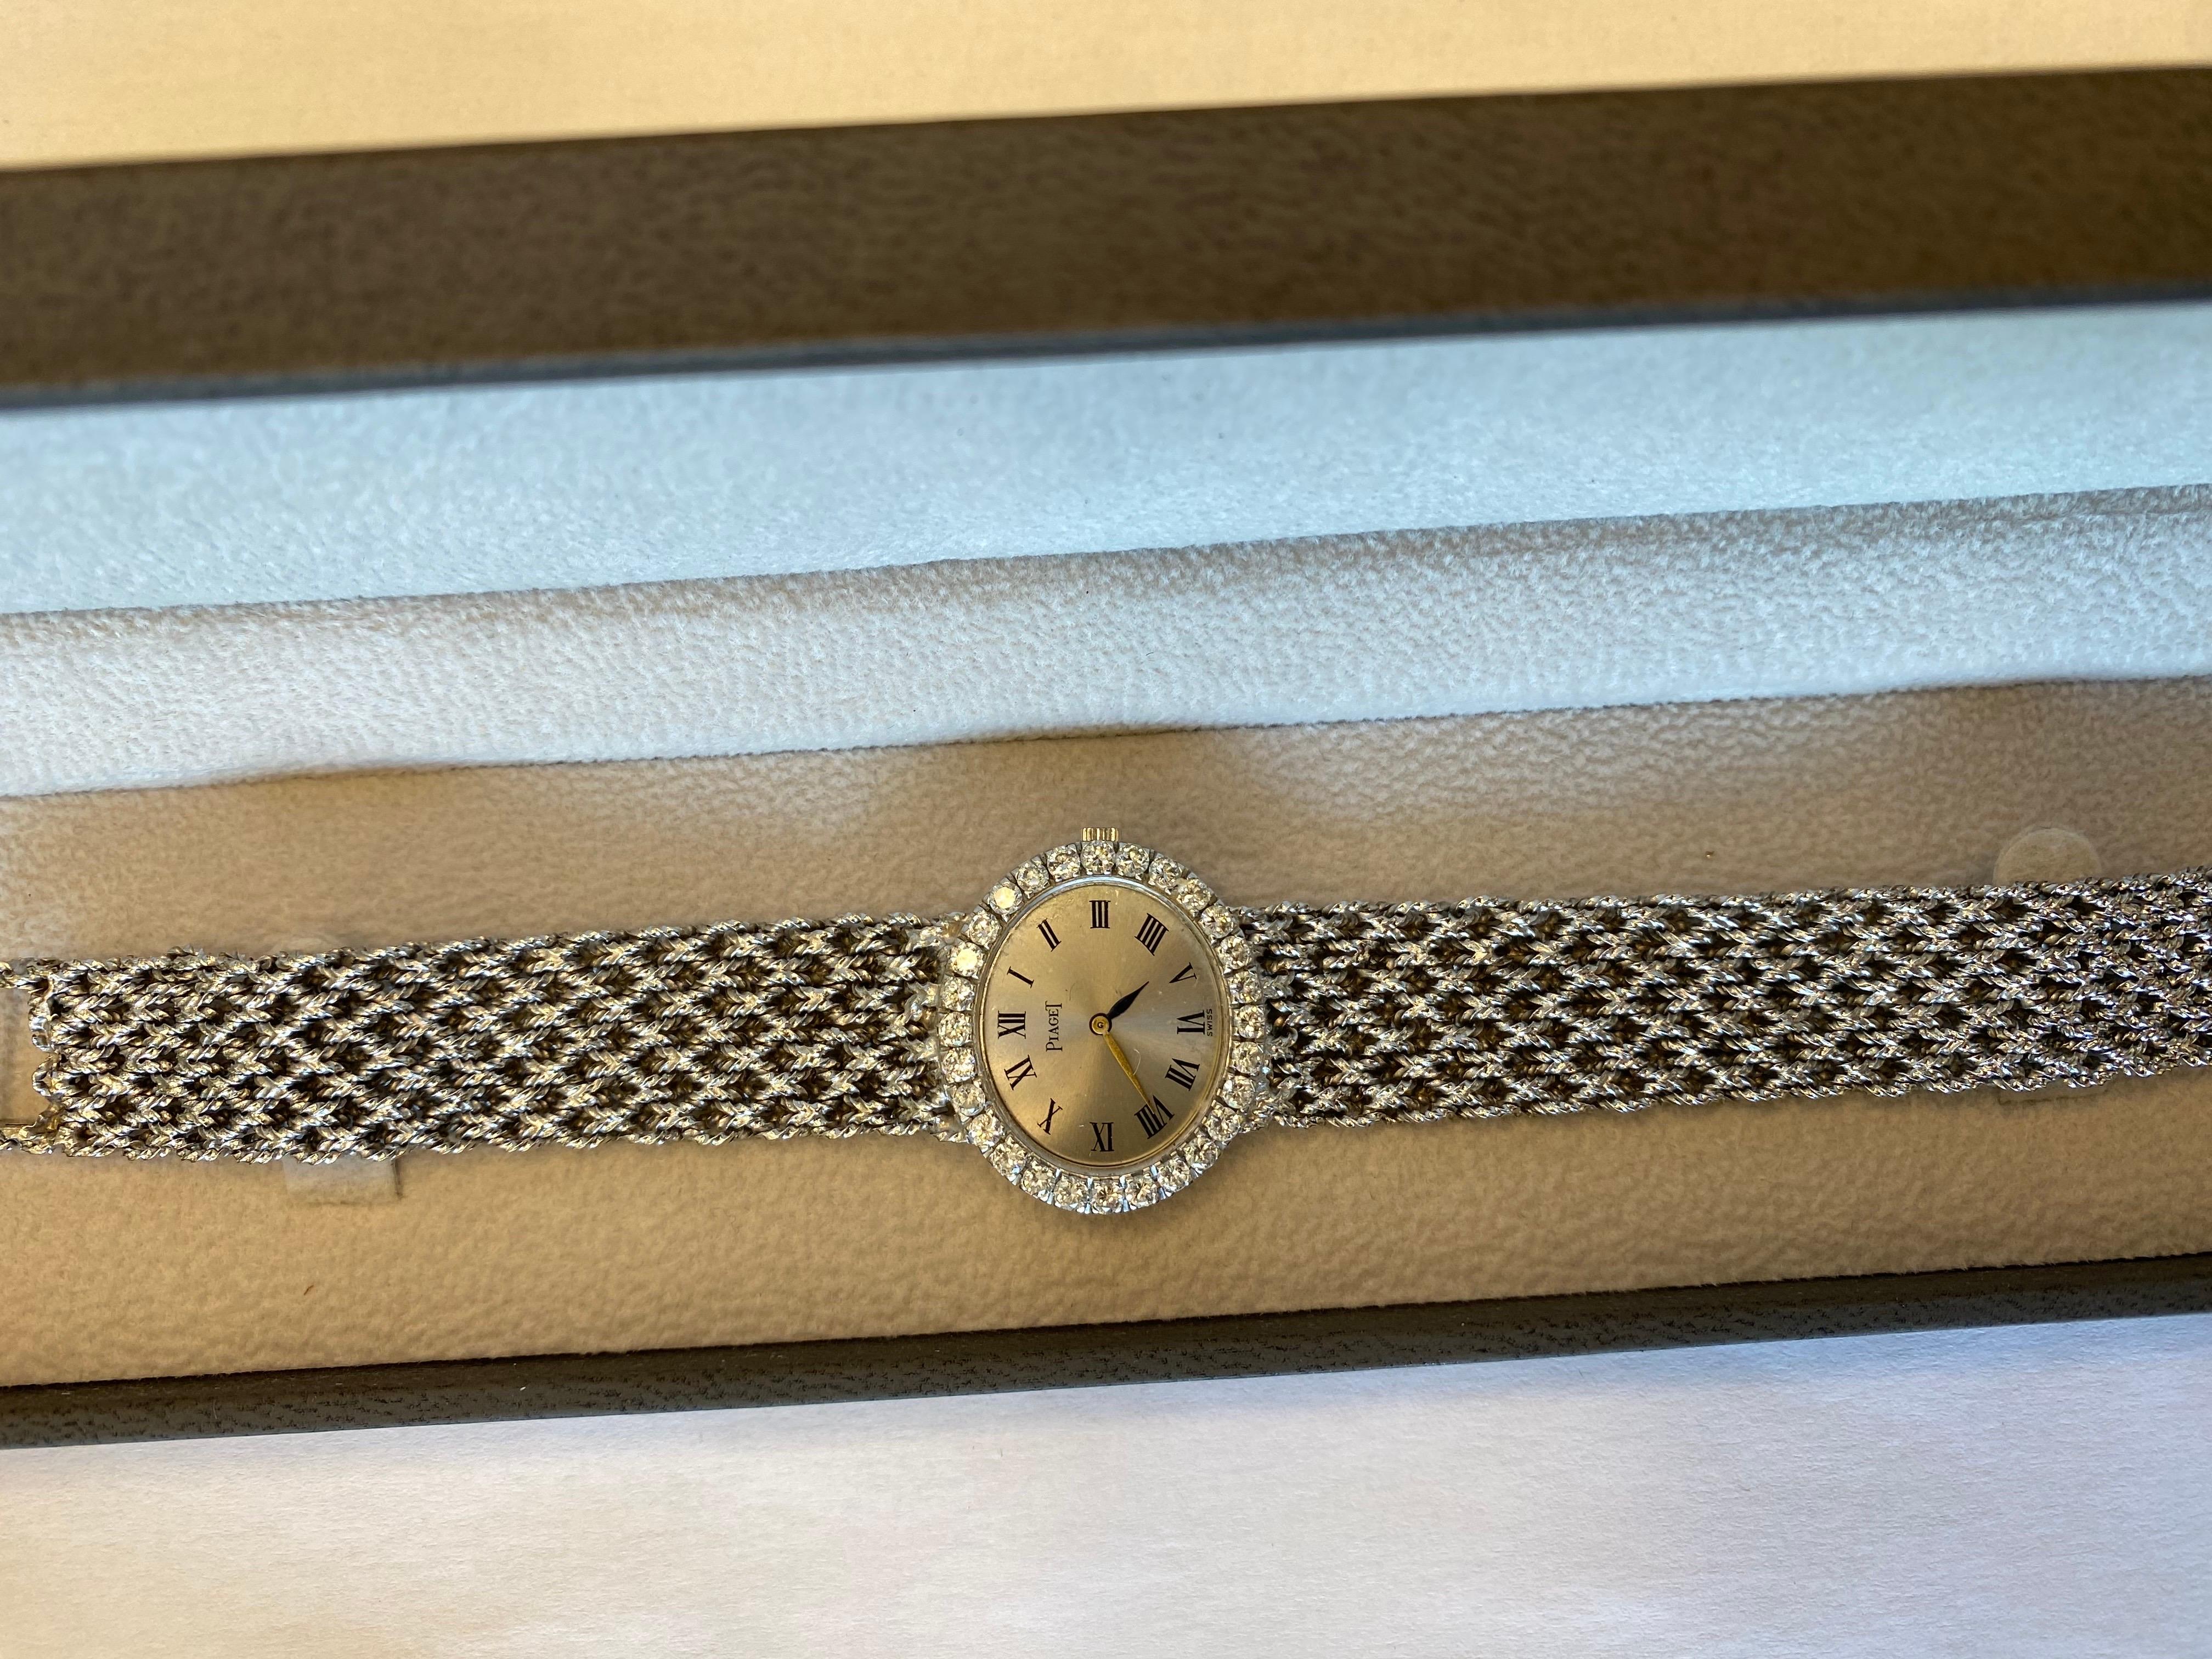 Diese 18k Original Piaget Uhr hat ein einzigartiges Aussehen!
Mit einem atemberaubenden Display und Diamanten auf der Lünette 
Diese Uhr sticht am besten hervor!

Durchmesser: 2,2x3,5 (elliptisch)